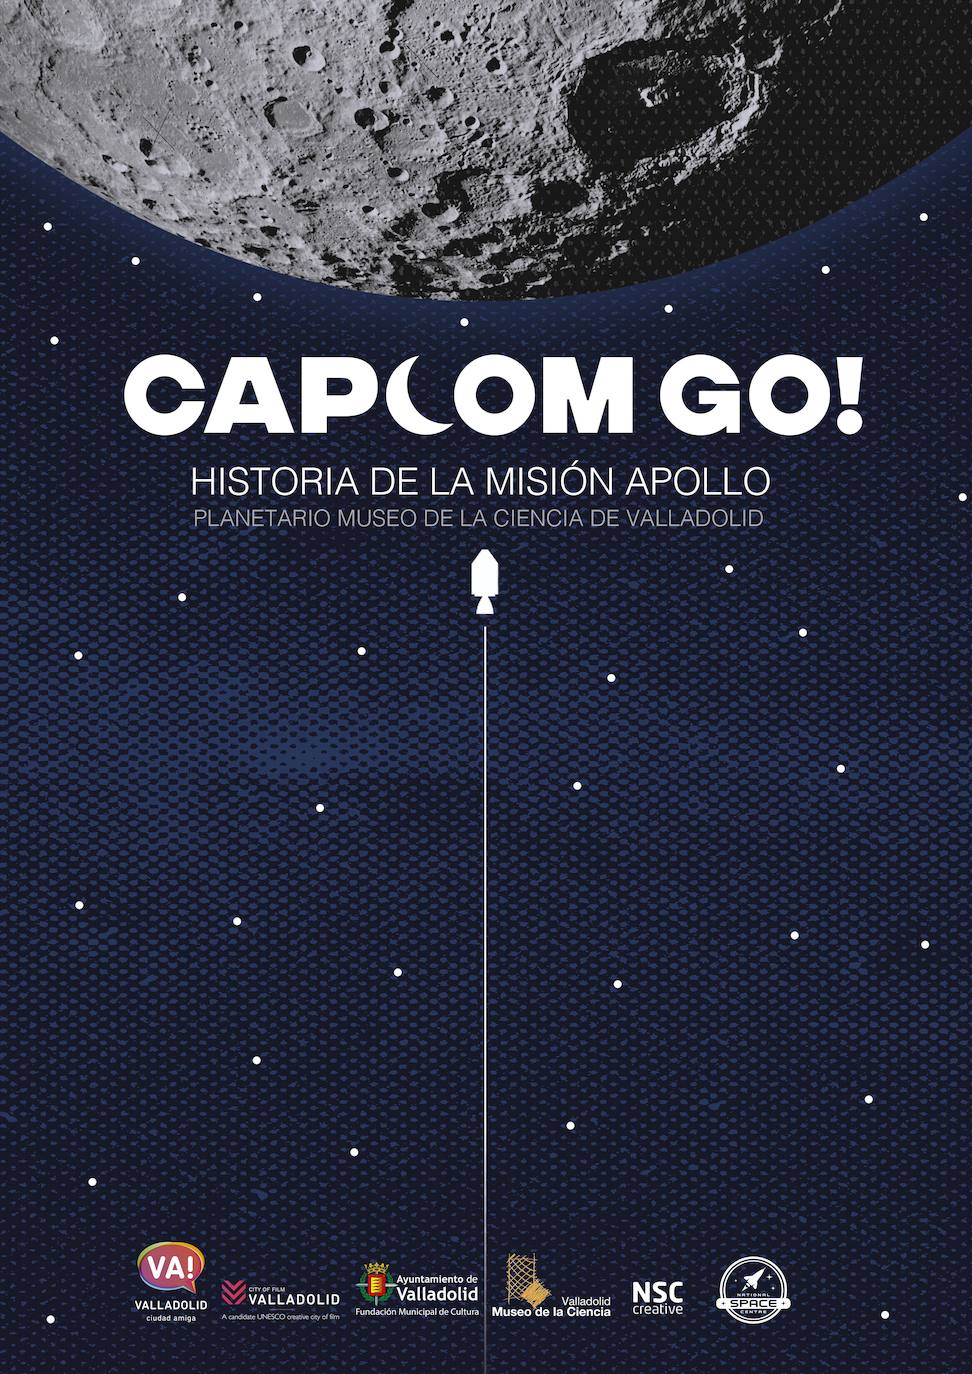 Cartel del programa de planetario Campcom go!